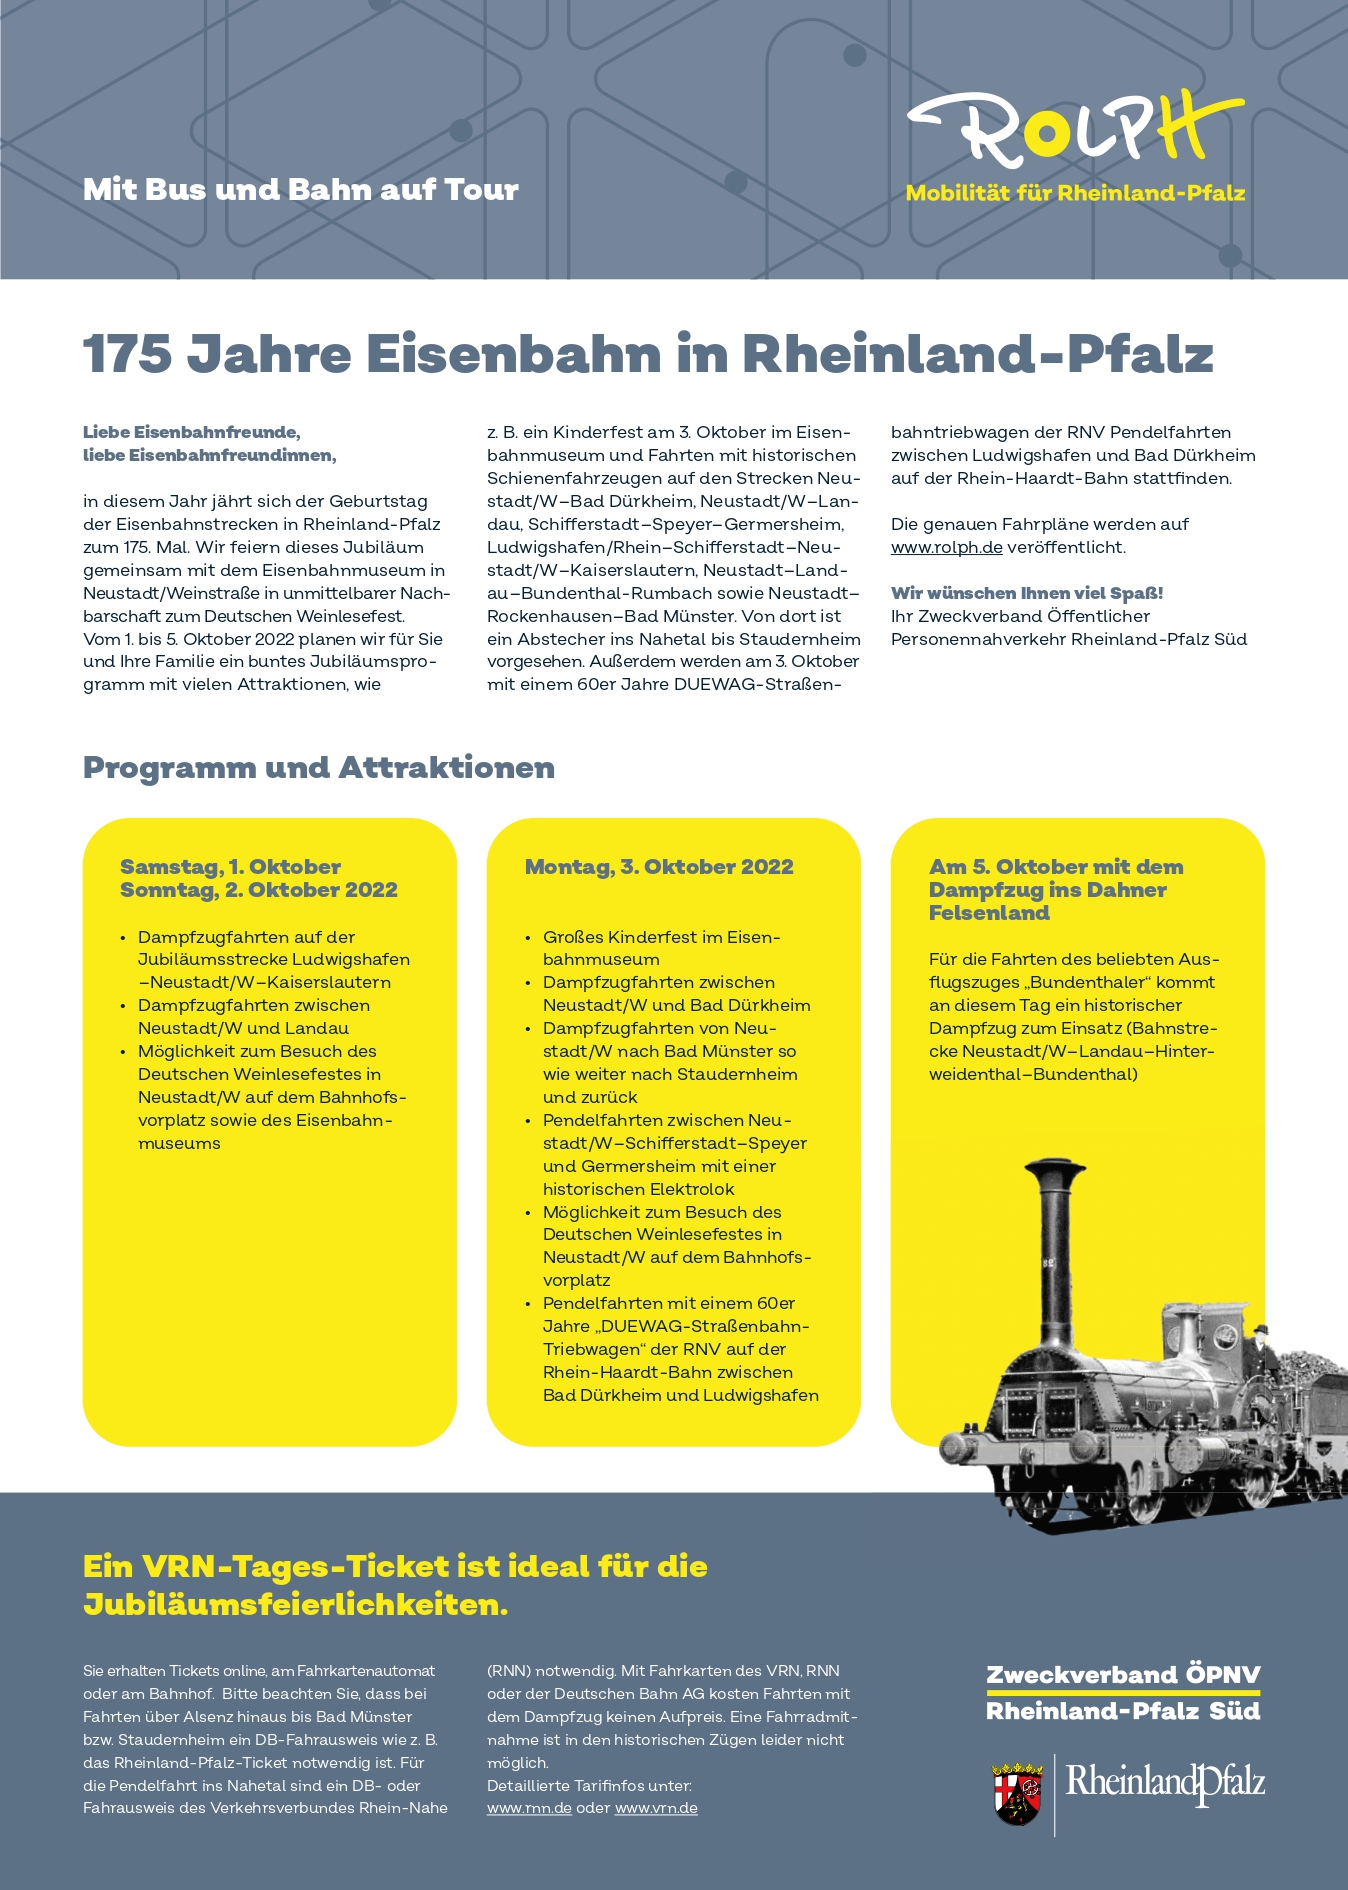 Bild vergrößern: Programmübersicht "175 Jahre Eisenbahn in Rheinland-Pfalz"